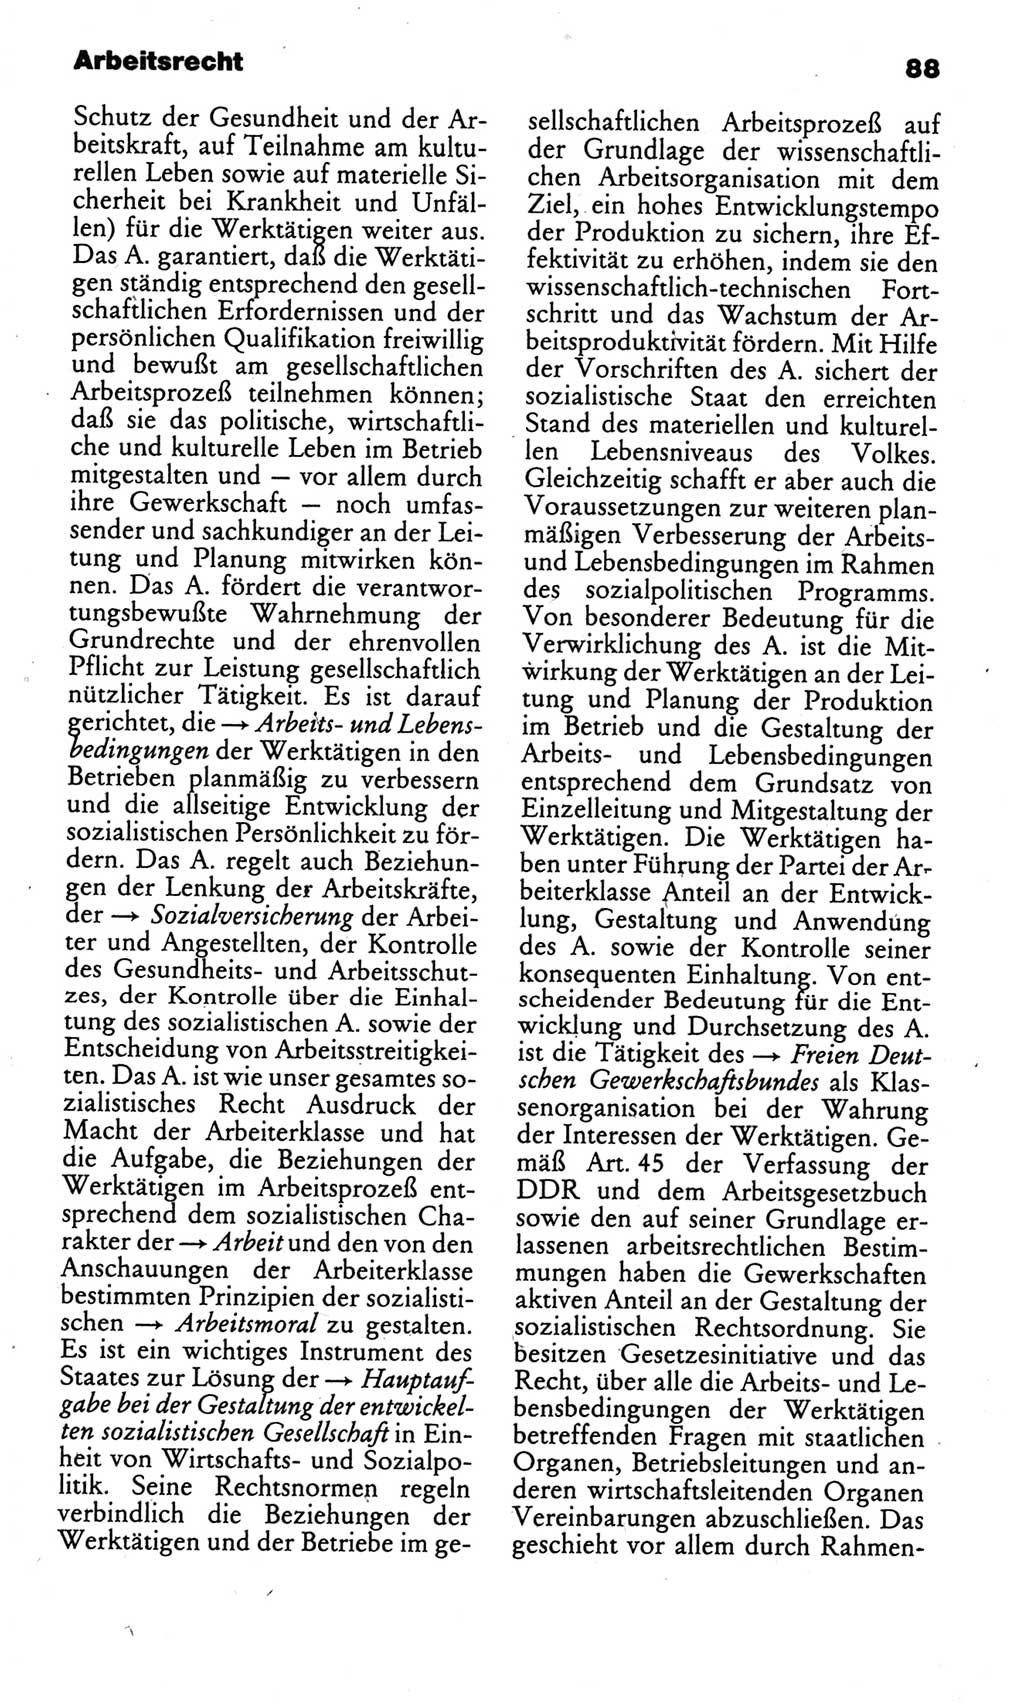 Kleines politisches Wörterbuch [Deutsche Demokratische Republik (DDR)] 1986, Seite 88 (Kl. pol. Wb. DDR 1986, S. 88)